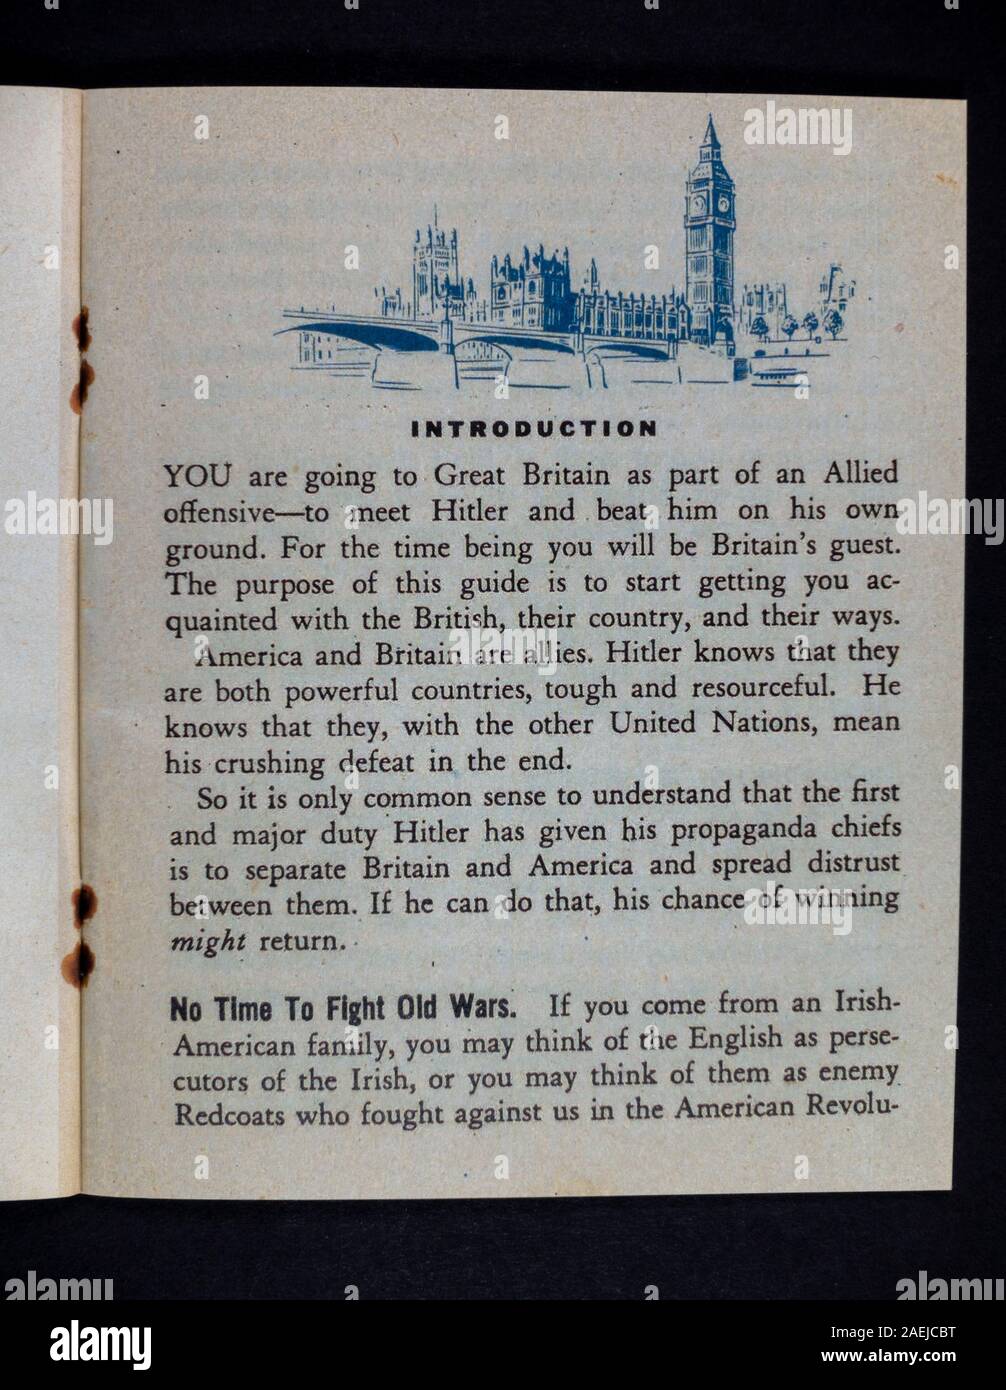 Introduzione all'interno della pagina 'A Short Guide to Great Britain', un pezzo della seconda guerra mondiale di cimeli relativi agli americani ('Yanks') nel Regno Unito. Foto Stock